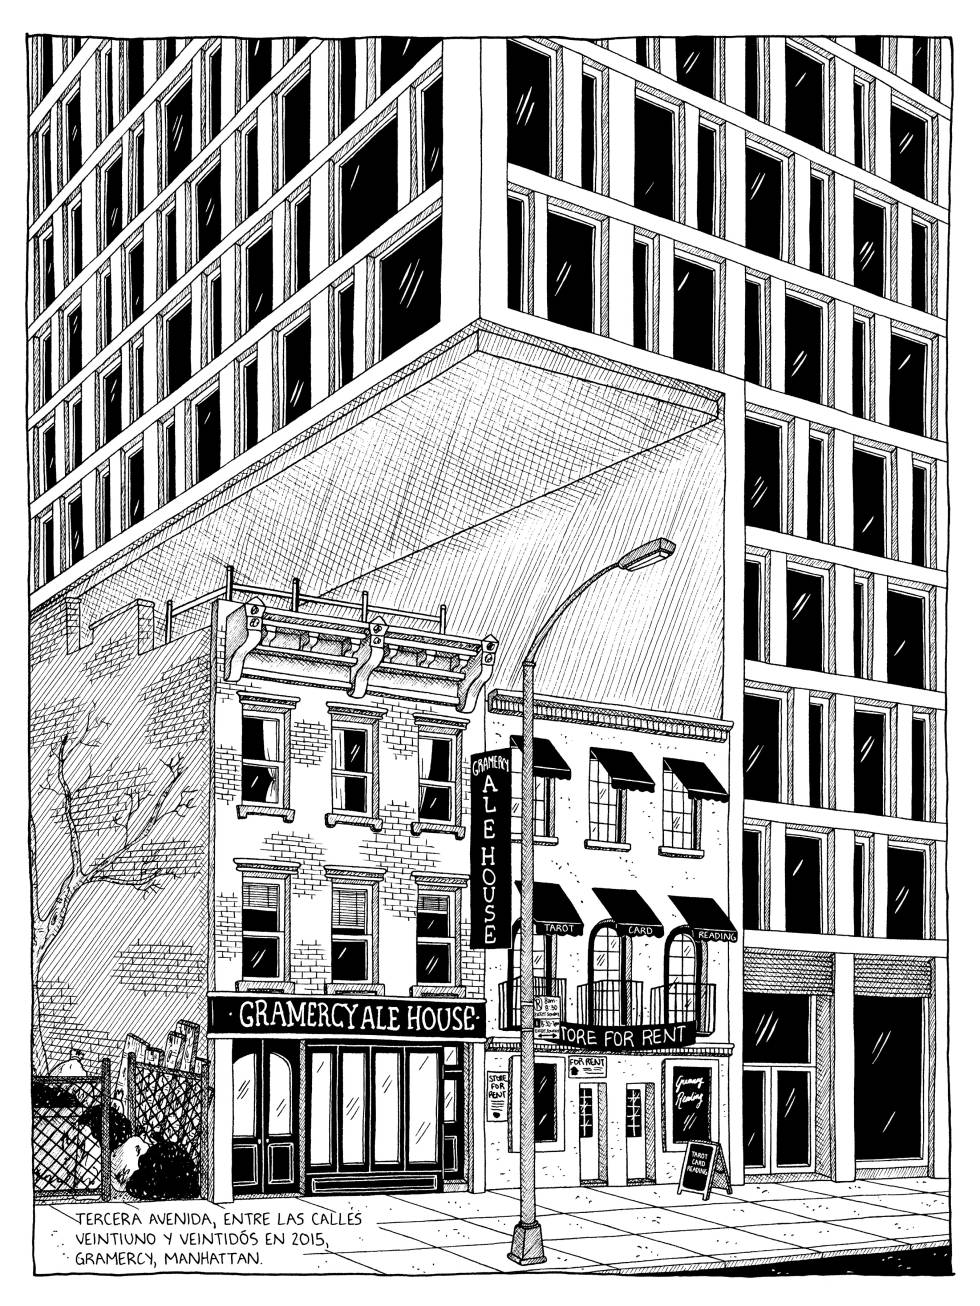 Dibujo de Julia Wertz para el libro 'Barrios, bloques y basura' (Errata Naturae) del 'hold out' de la Tercera avenida, entre las calles 21 y 22 de Gramercy en Manhattan.